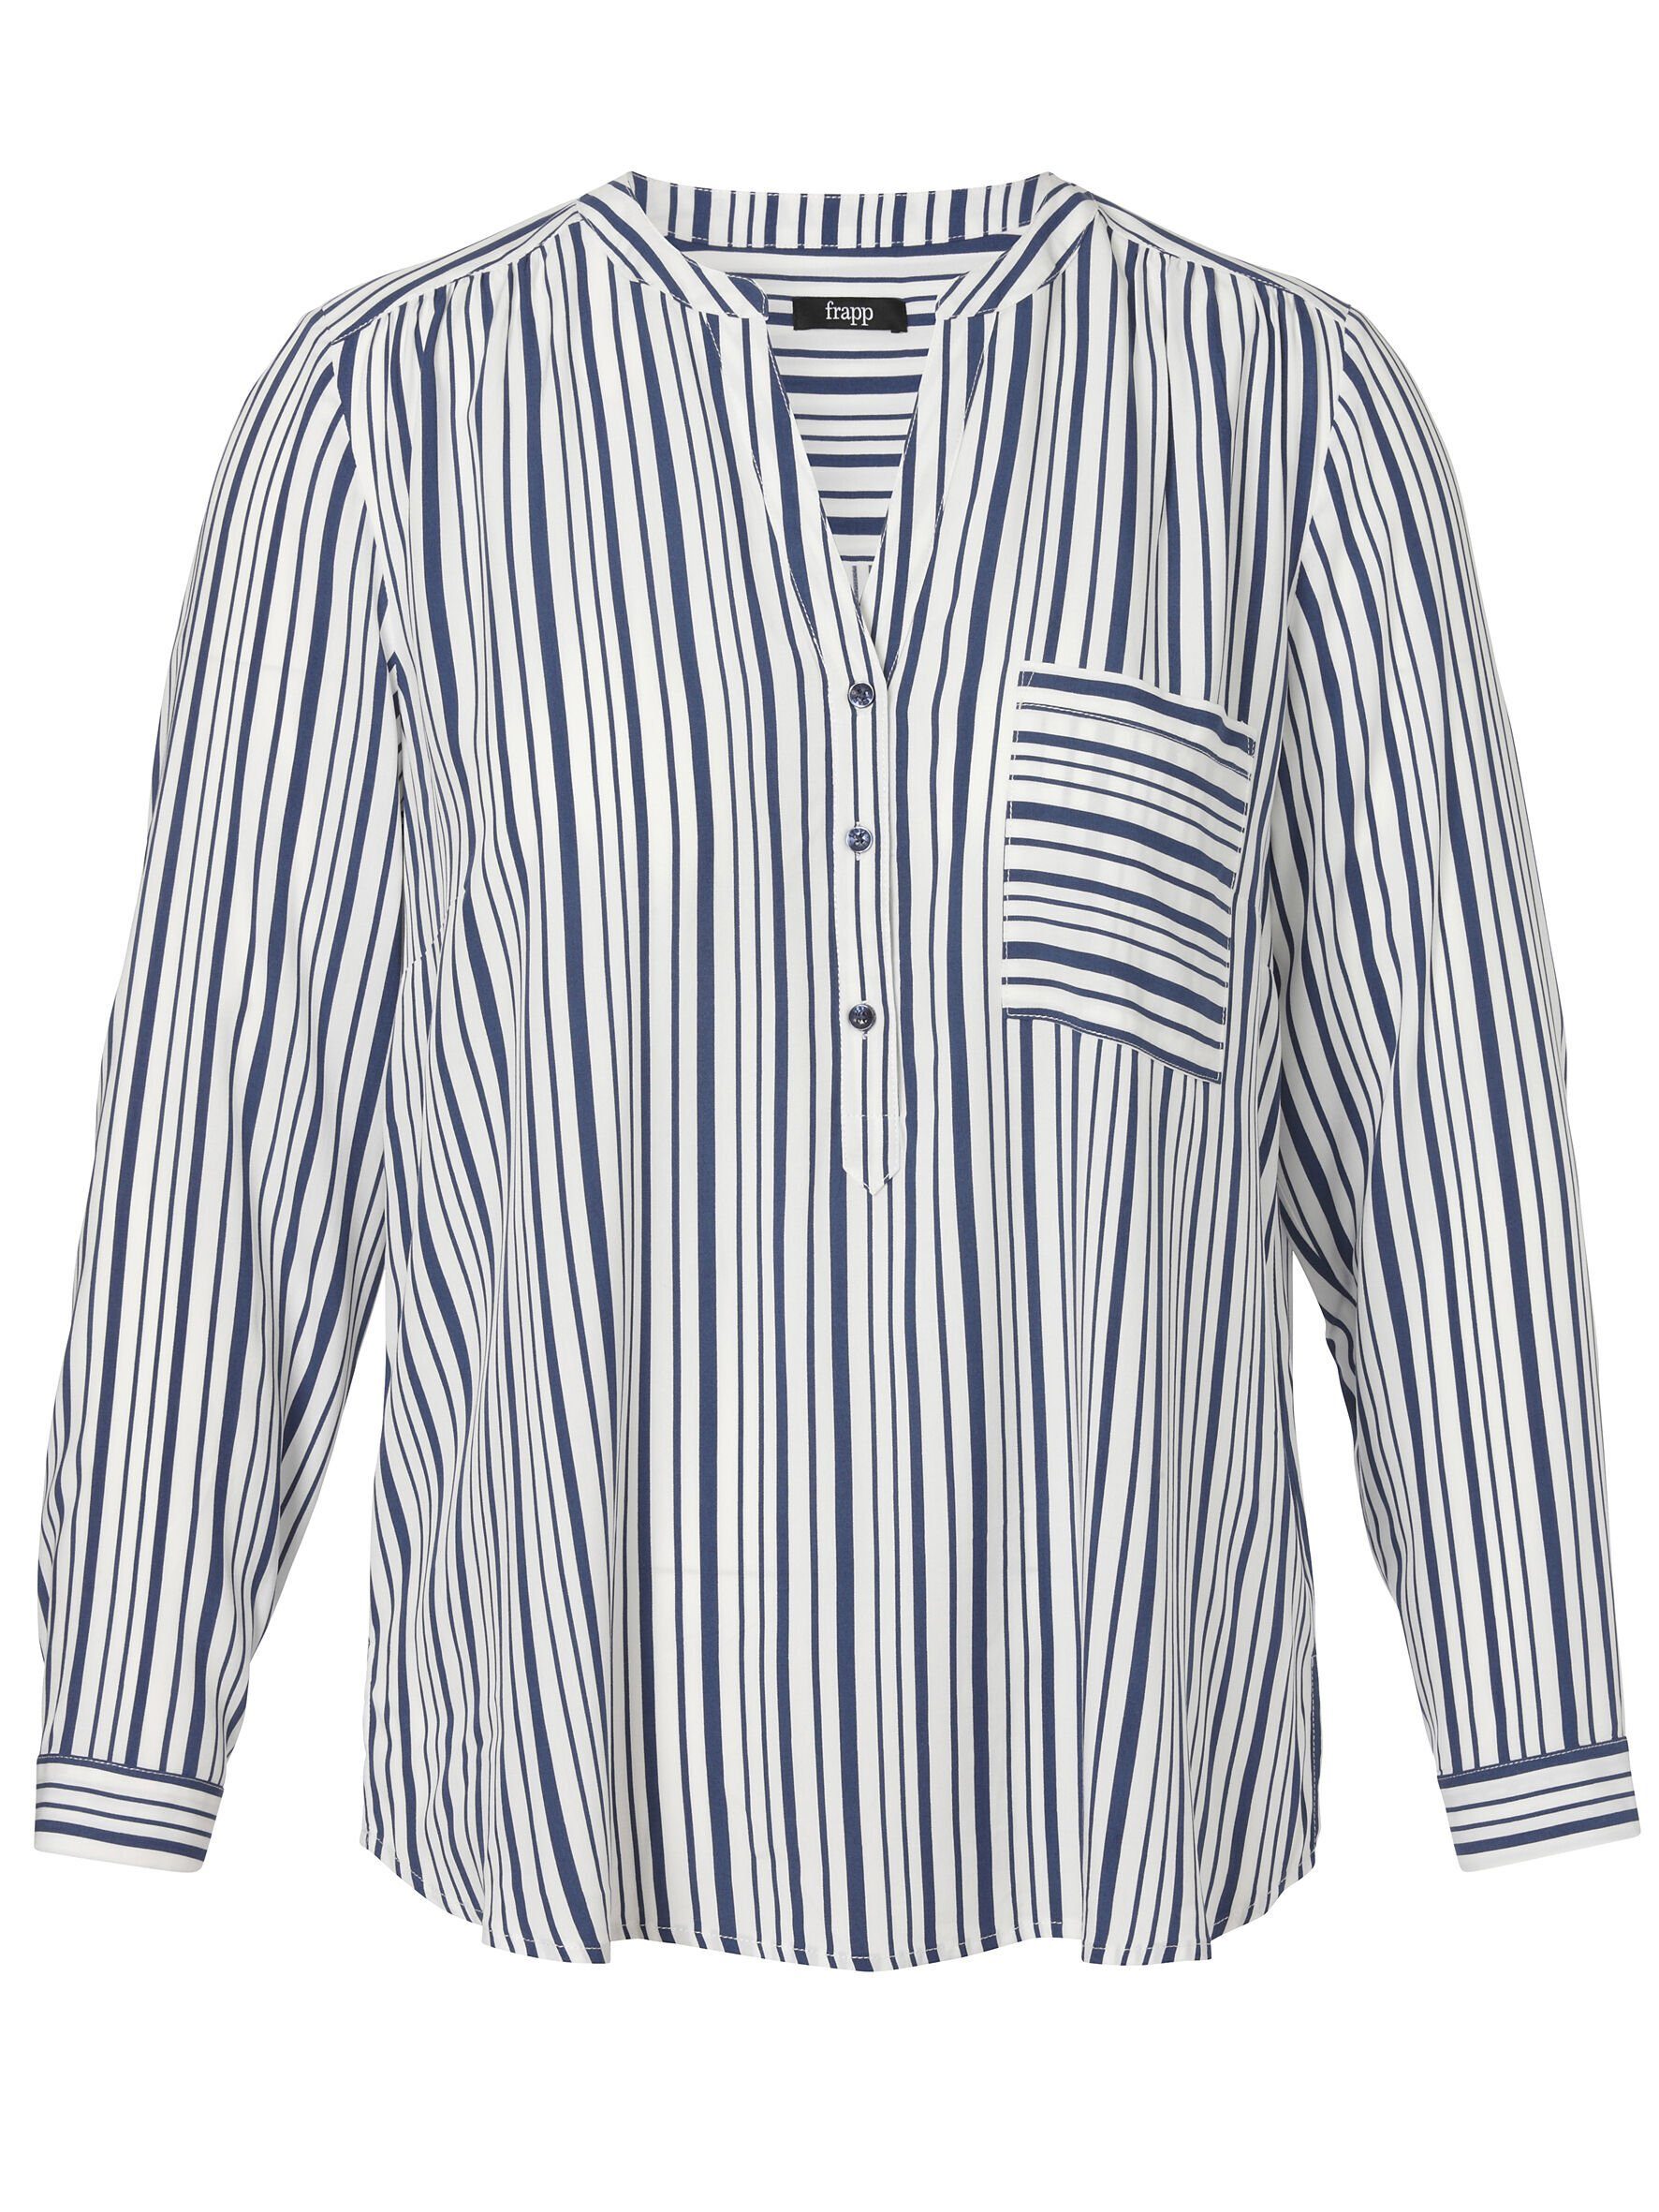 FRAPP Klassische Bluse mit gestreiftem Allover-Muster, Lange Ärmel mit  Manschetten, V-Ausschnitt | 